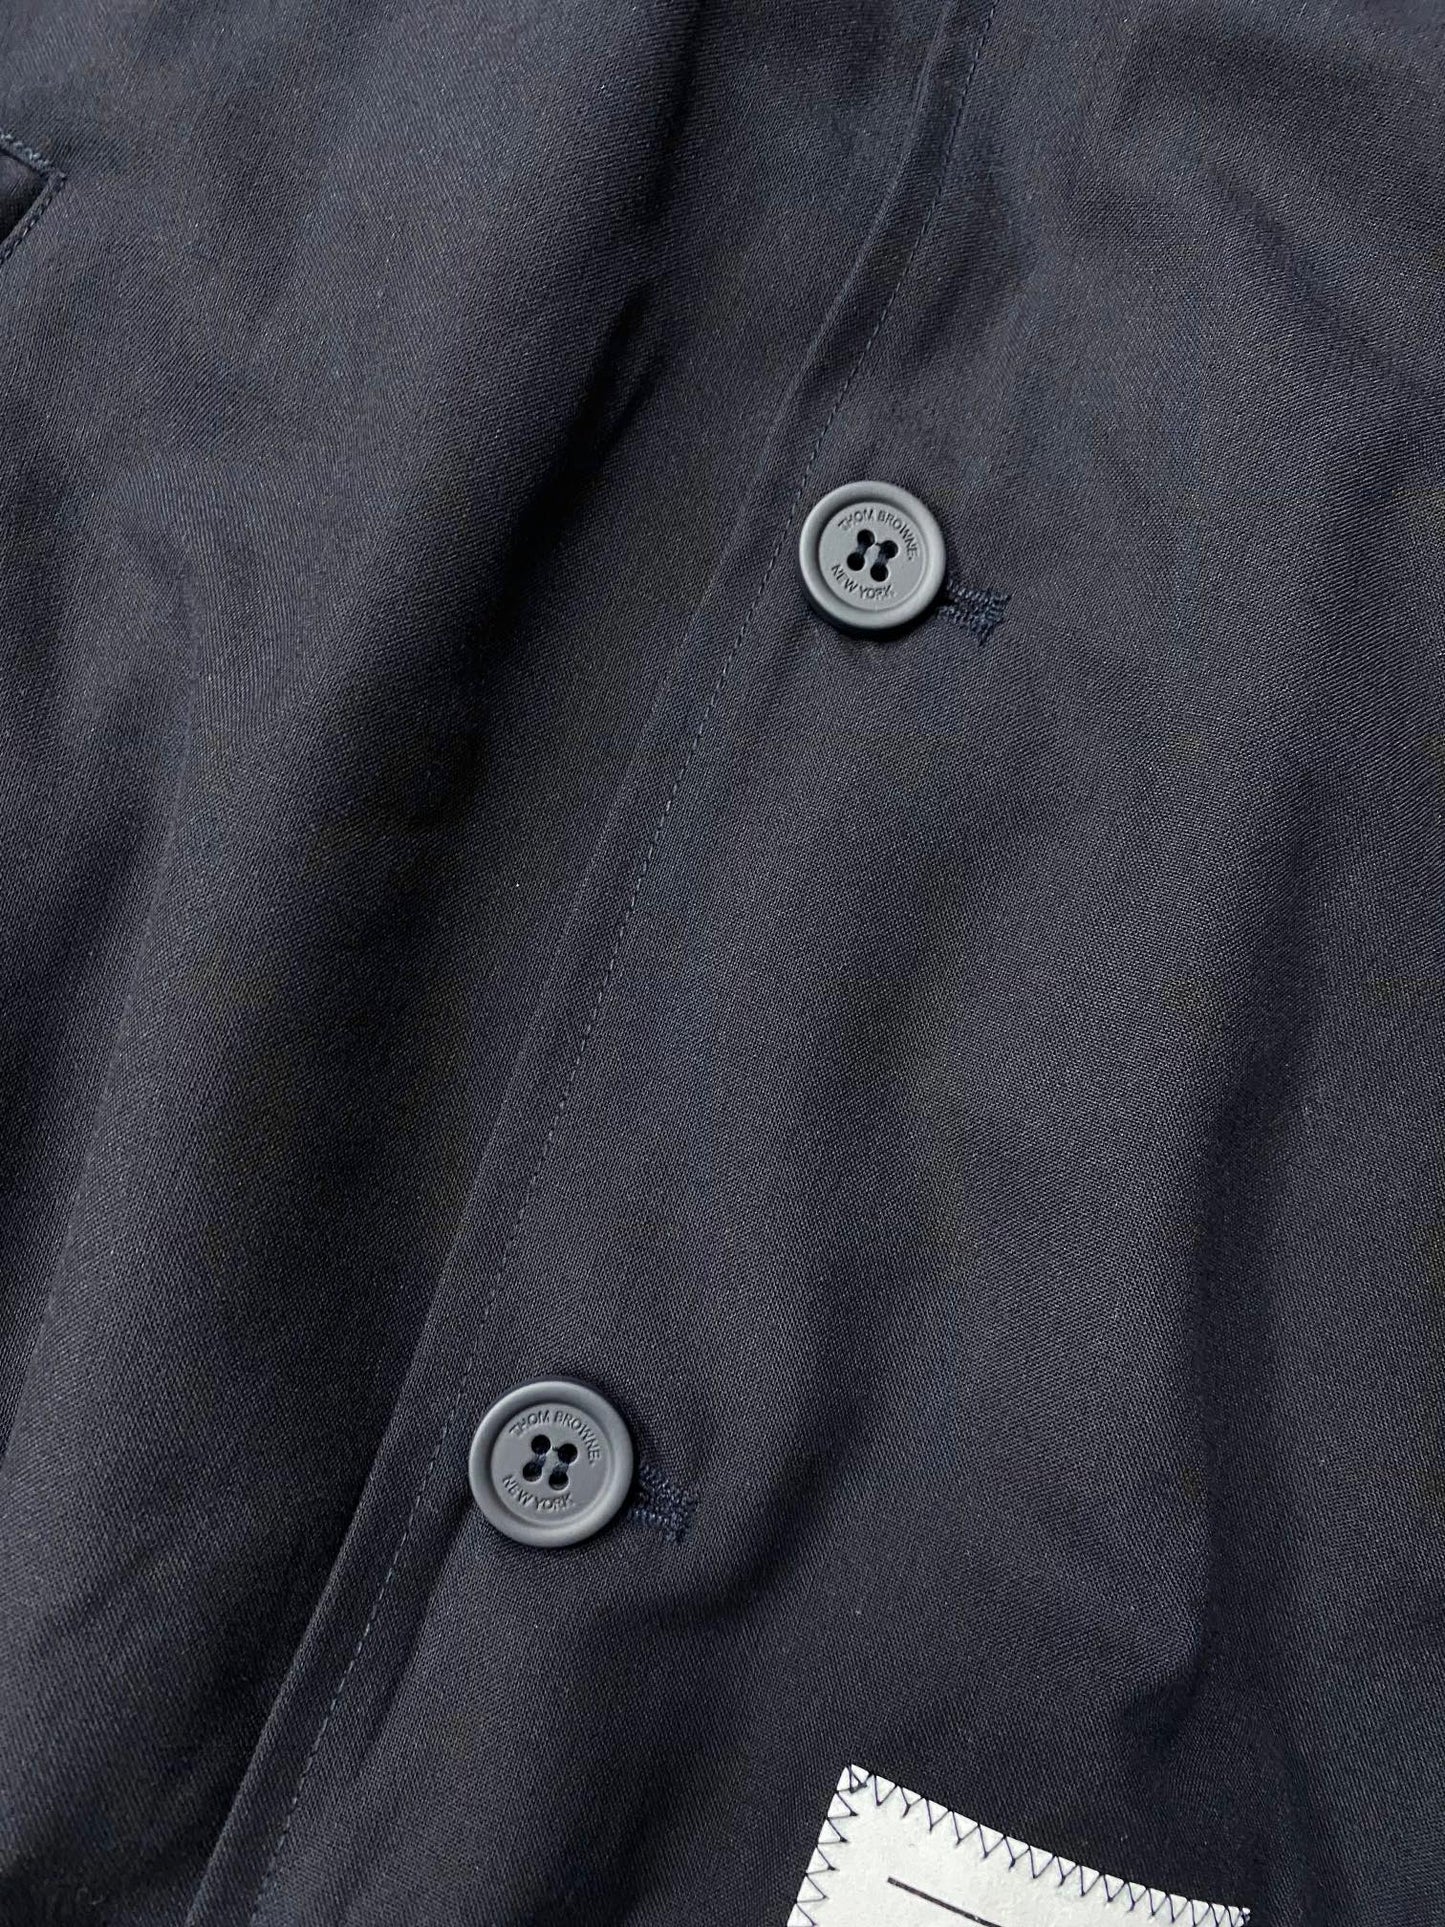 TJ셀러 / 톰브라운 울 자켓 바람막이 2가지 색상